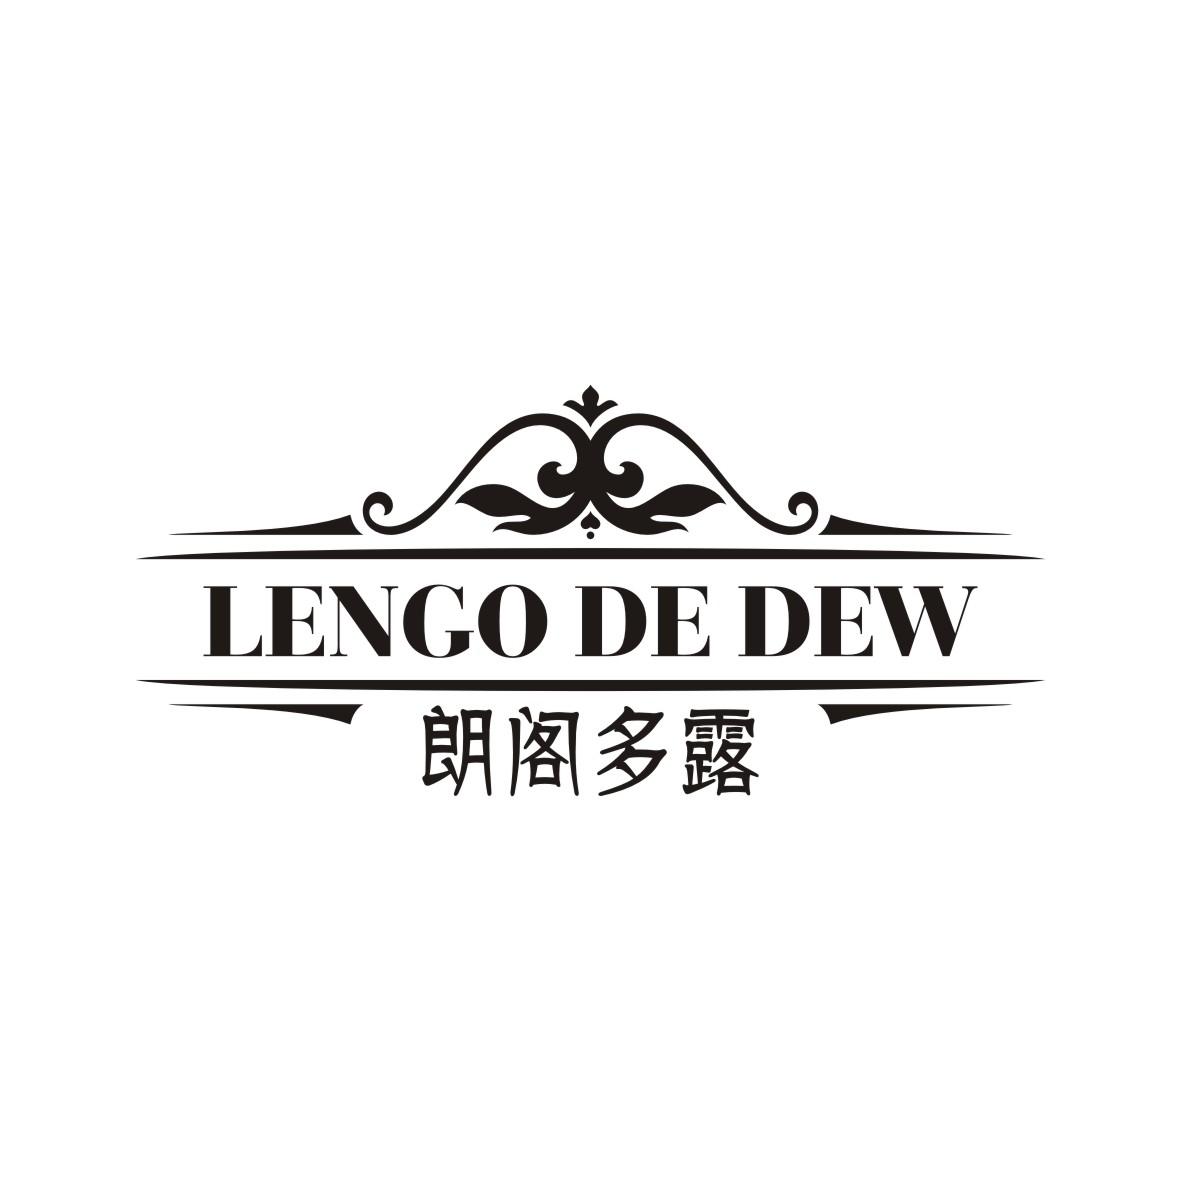 张煜楠商标朗阁多露 LENGO DE DEW（33类）商标转让流程及费用